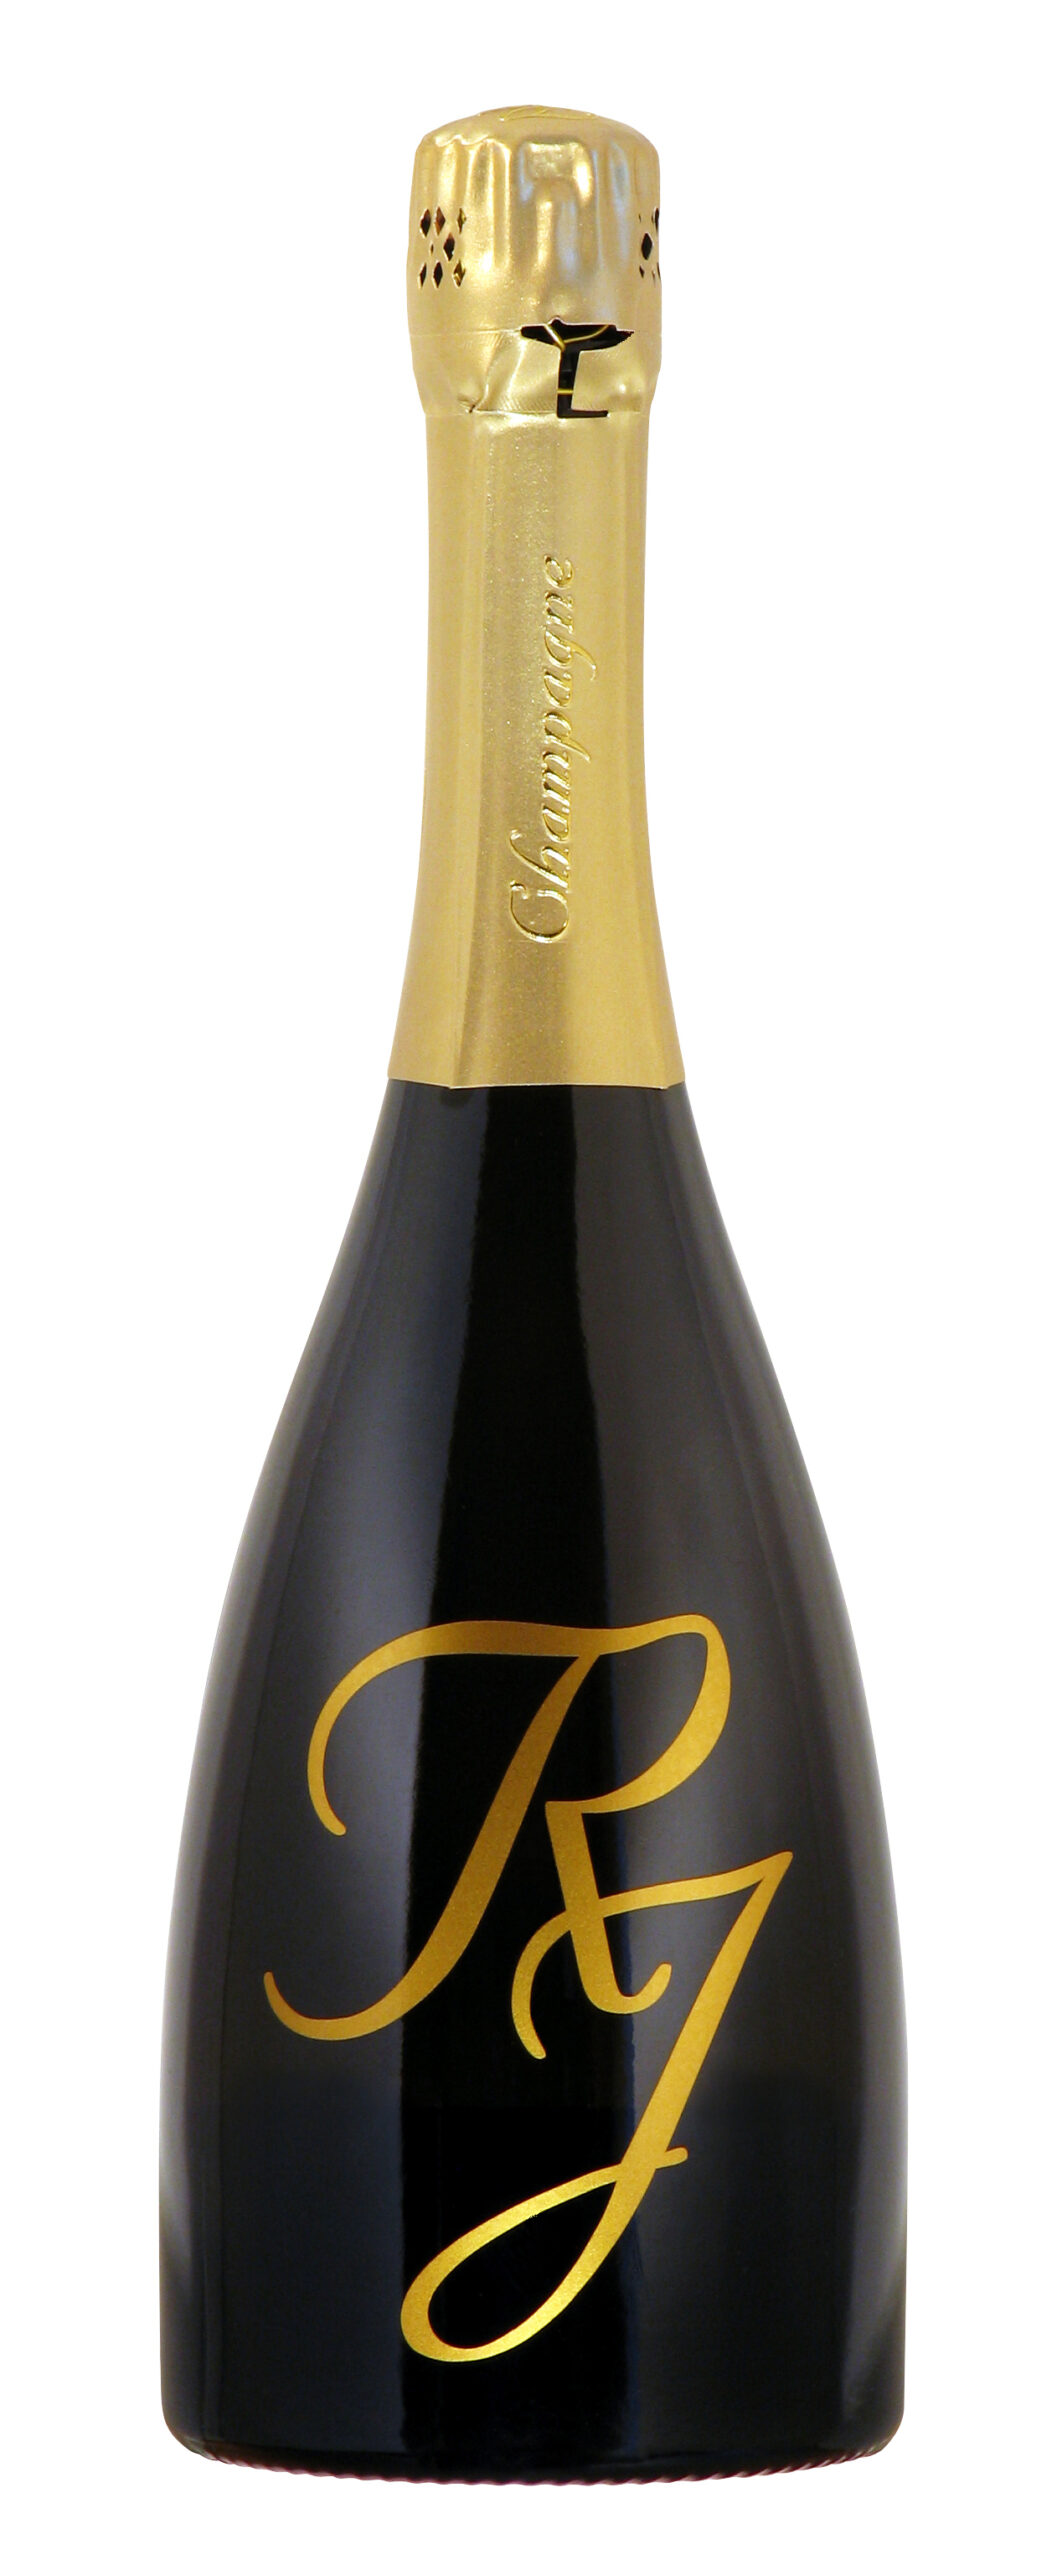 Champagne René Jolly - Cuvée Spéciale RJ